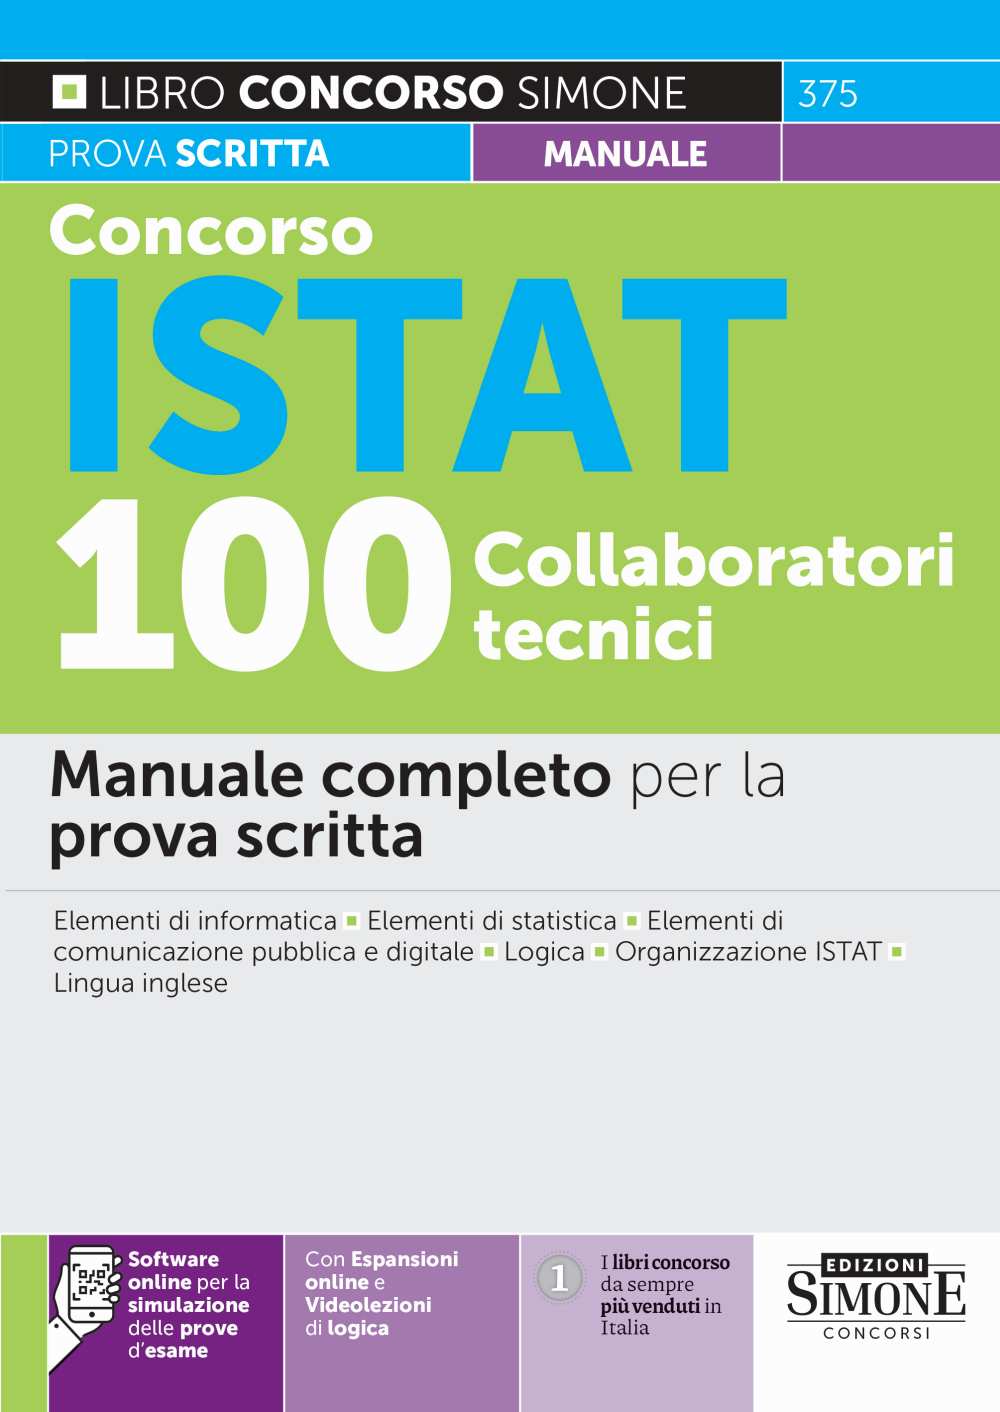 Concorso ISTAT 100 Collaboratori tecnici - Manuale - 375